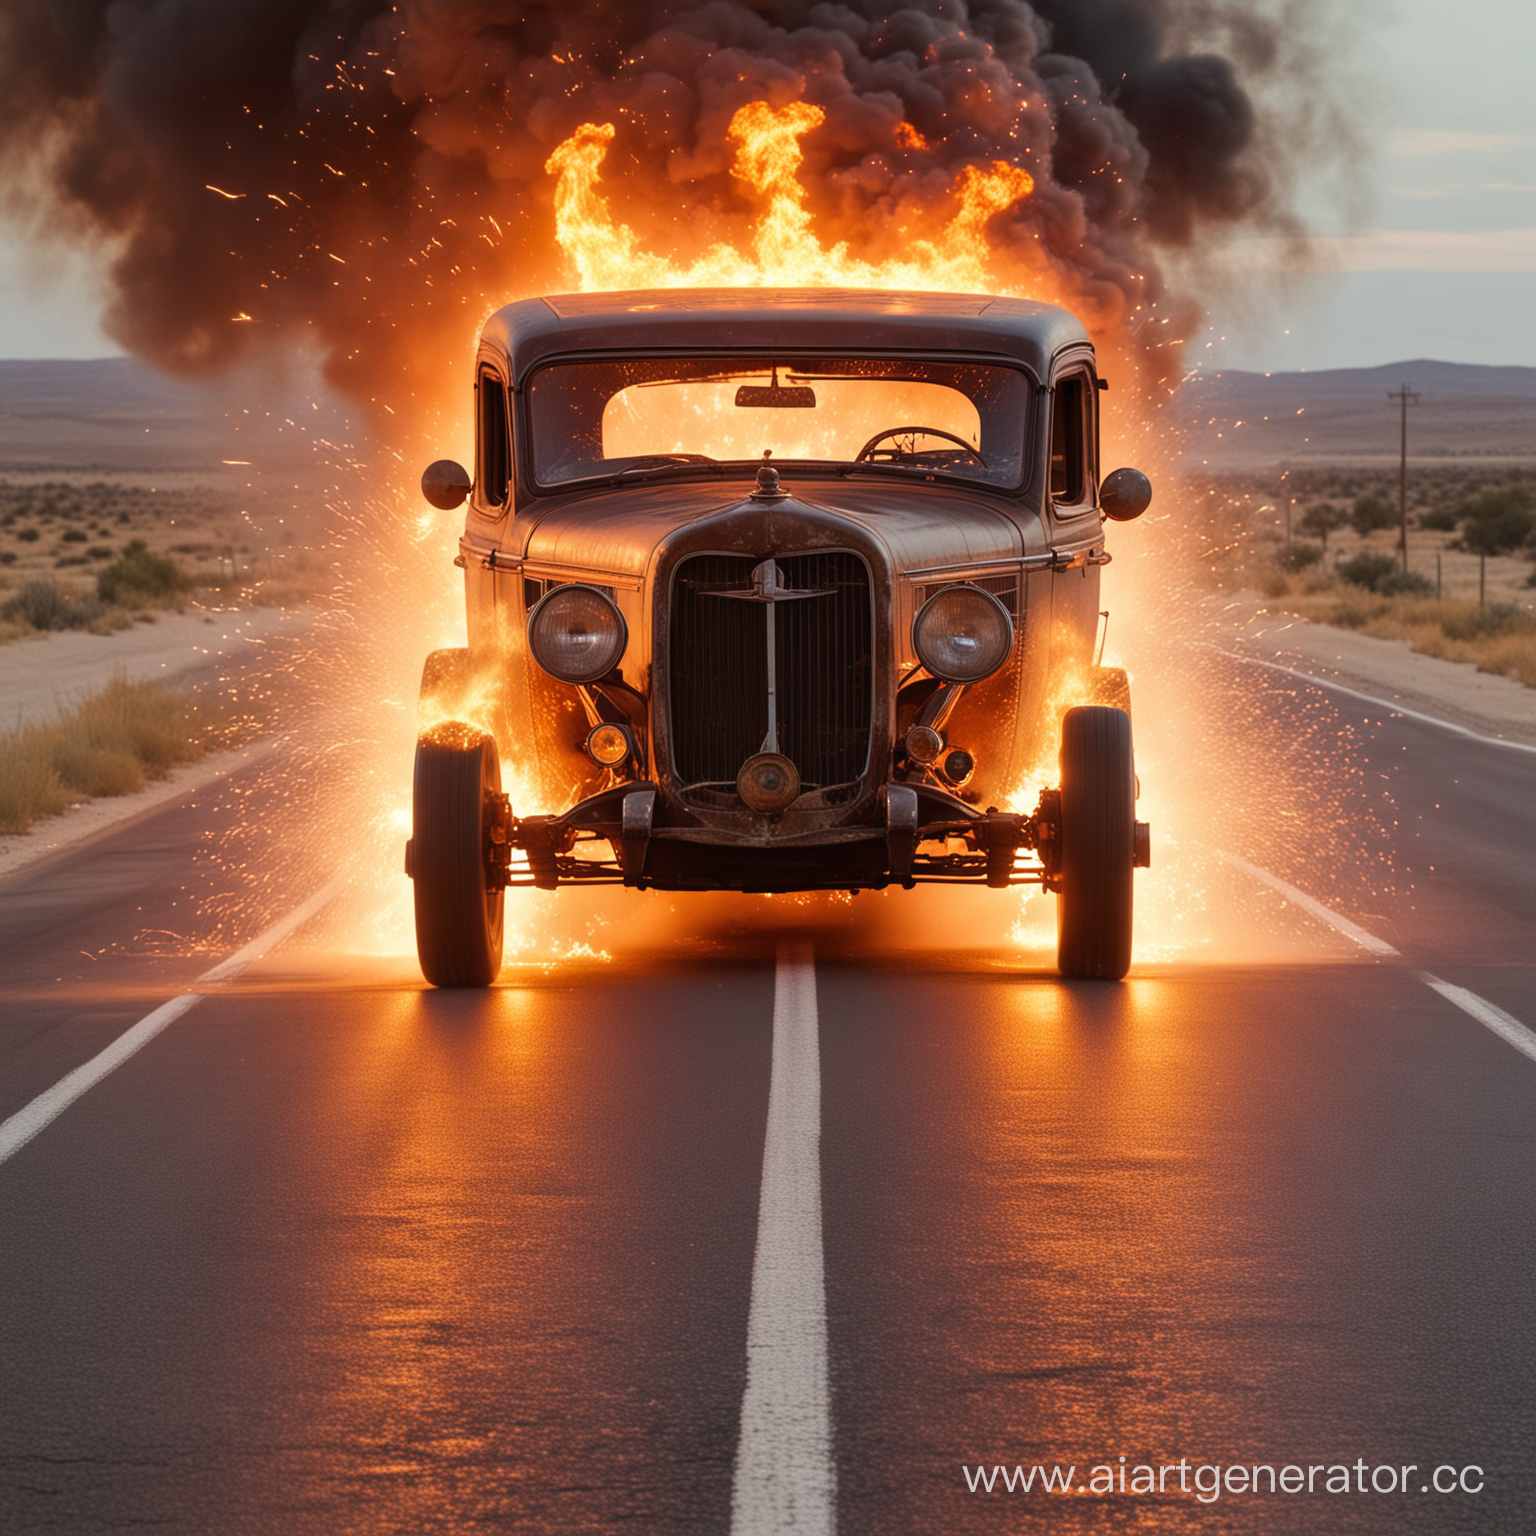 Огненное шоссе со старой машиной, которая едет вперед и из её колёс идут искры